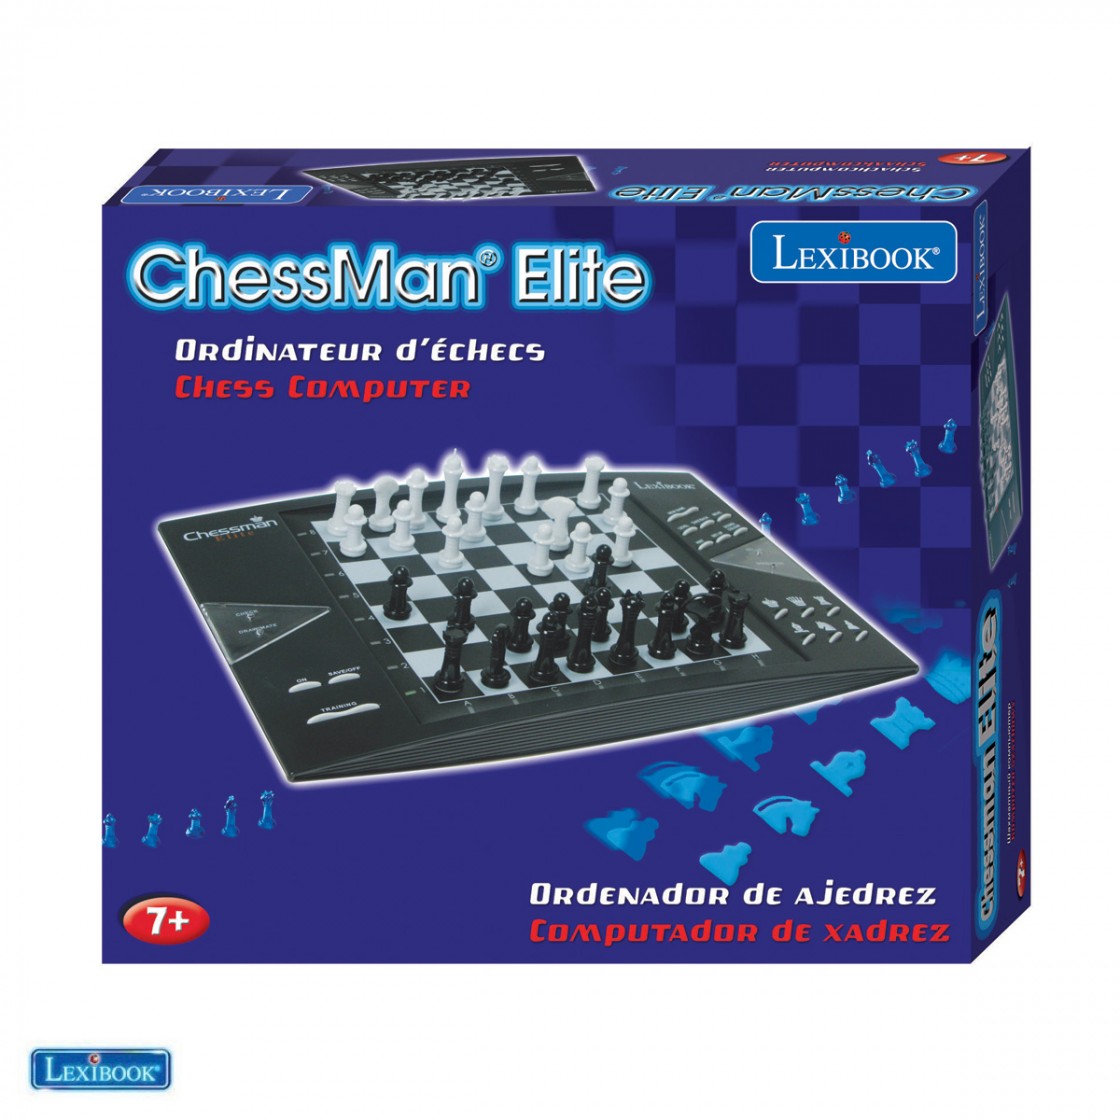 ChessMan® Elite, Elektronisches Schachspiel mit Berührungstastatur